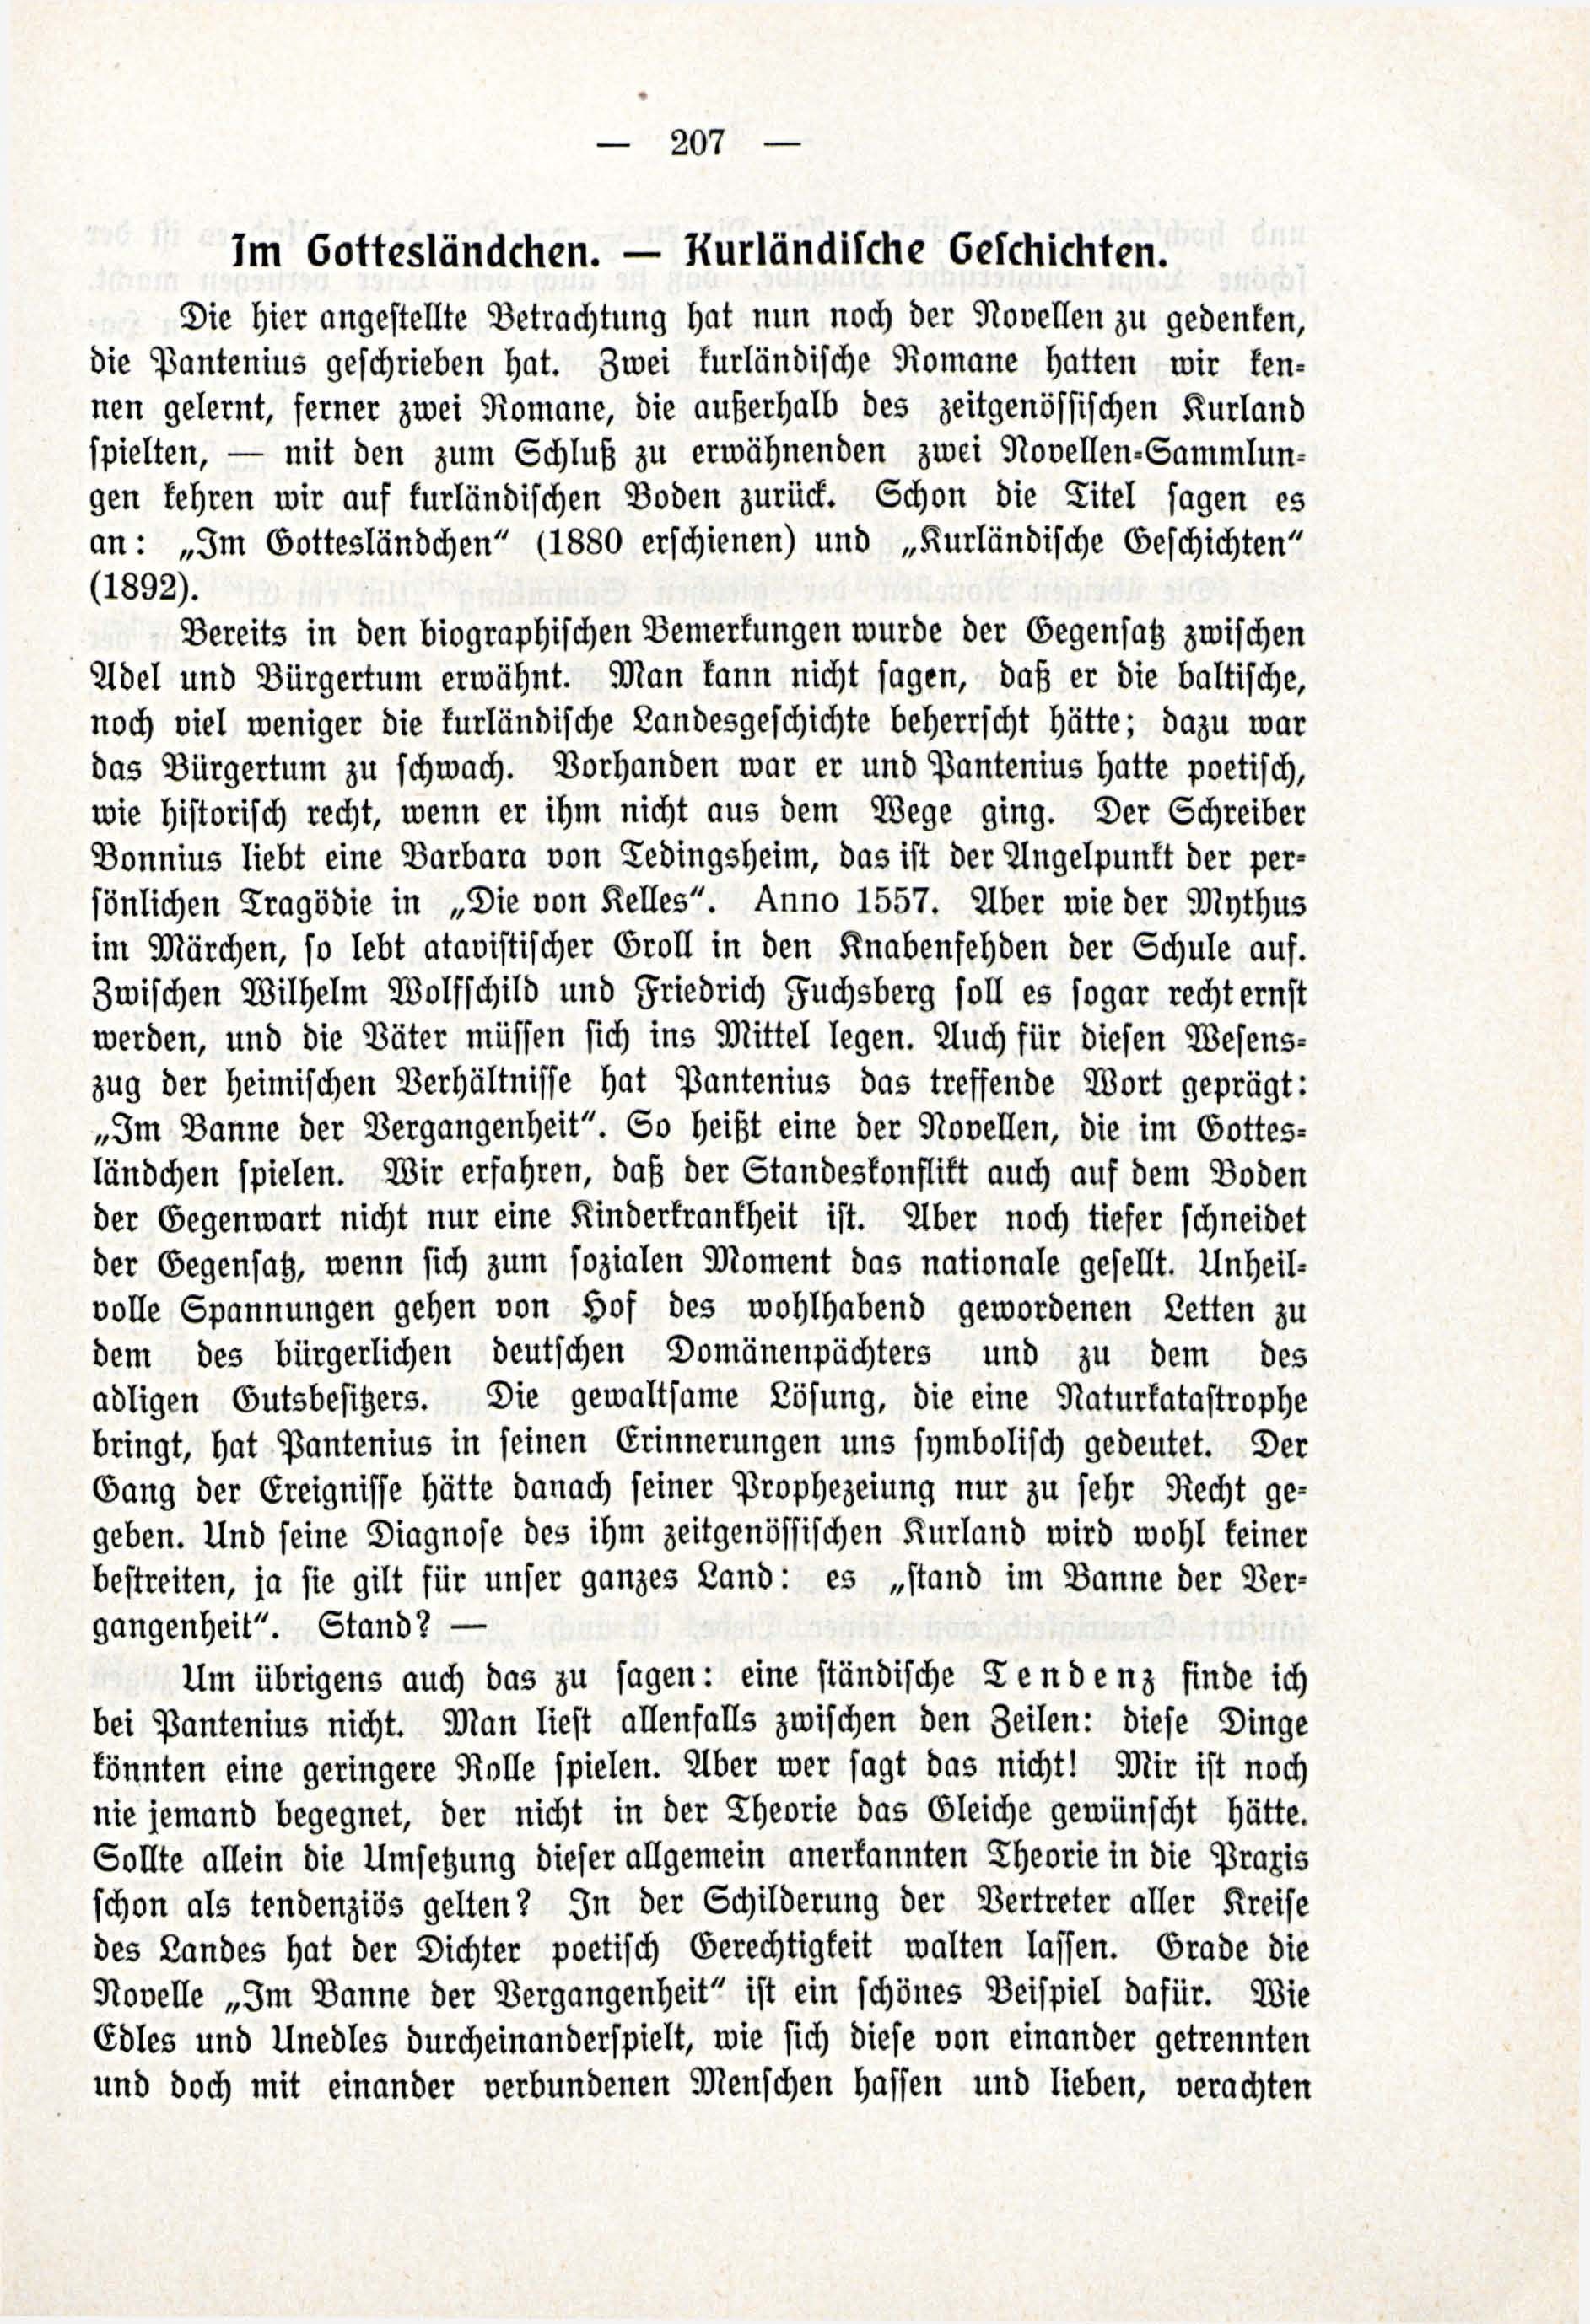 Deutsche Monatsschrift für Russland [3/03] (1914) | 53. (207) Põhitekst